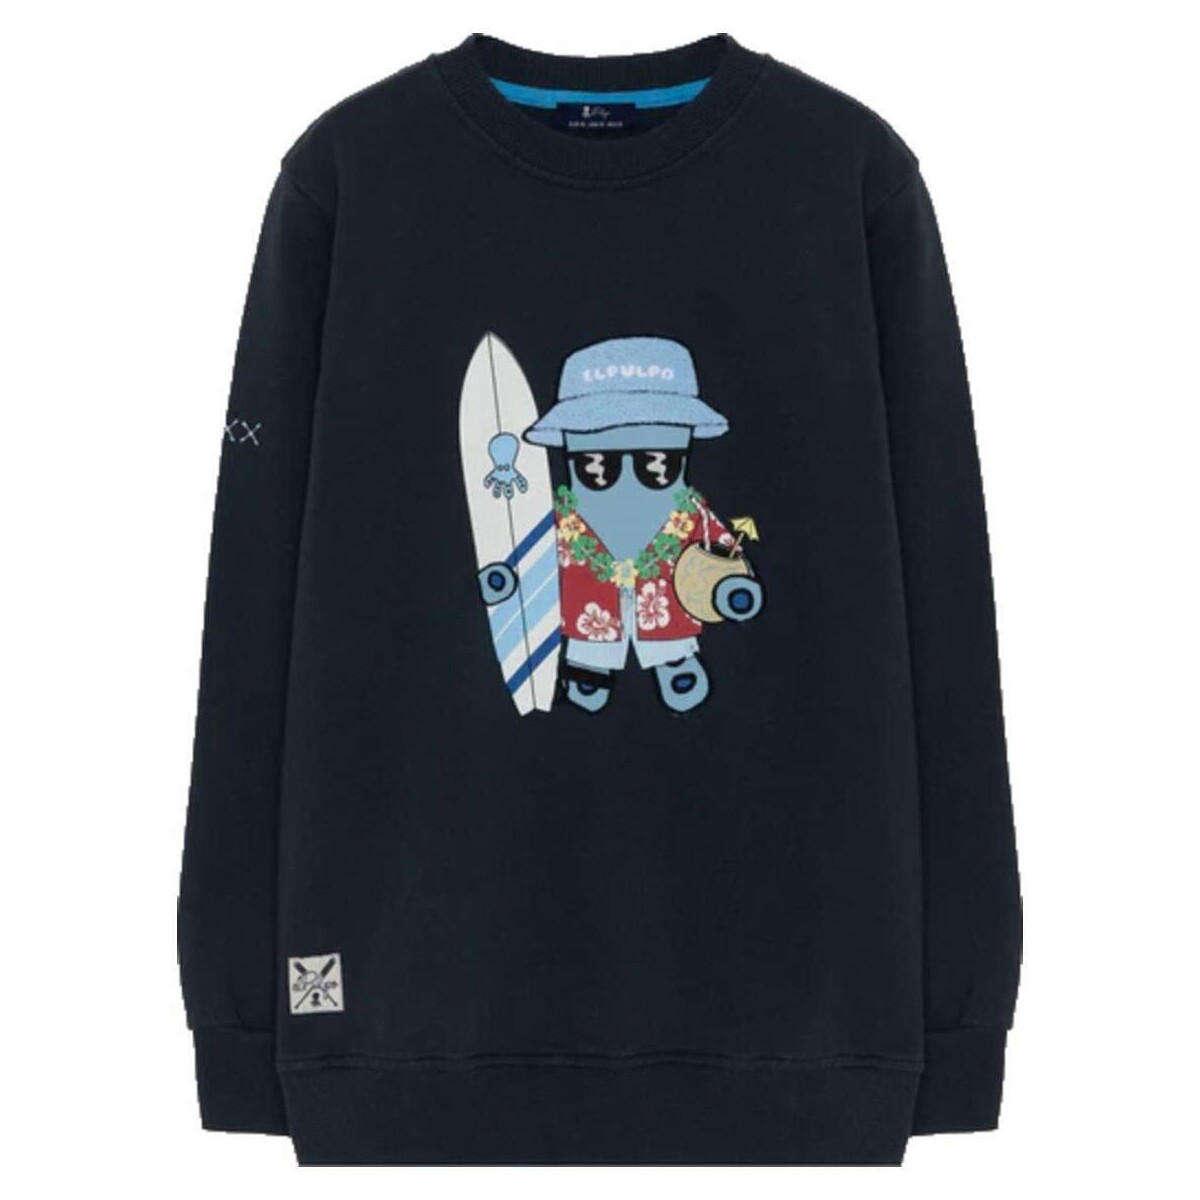 Textiel Jongens Sweaters / Sweatshirts Elpulpo  Blauw